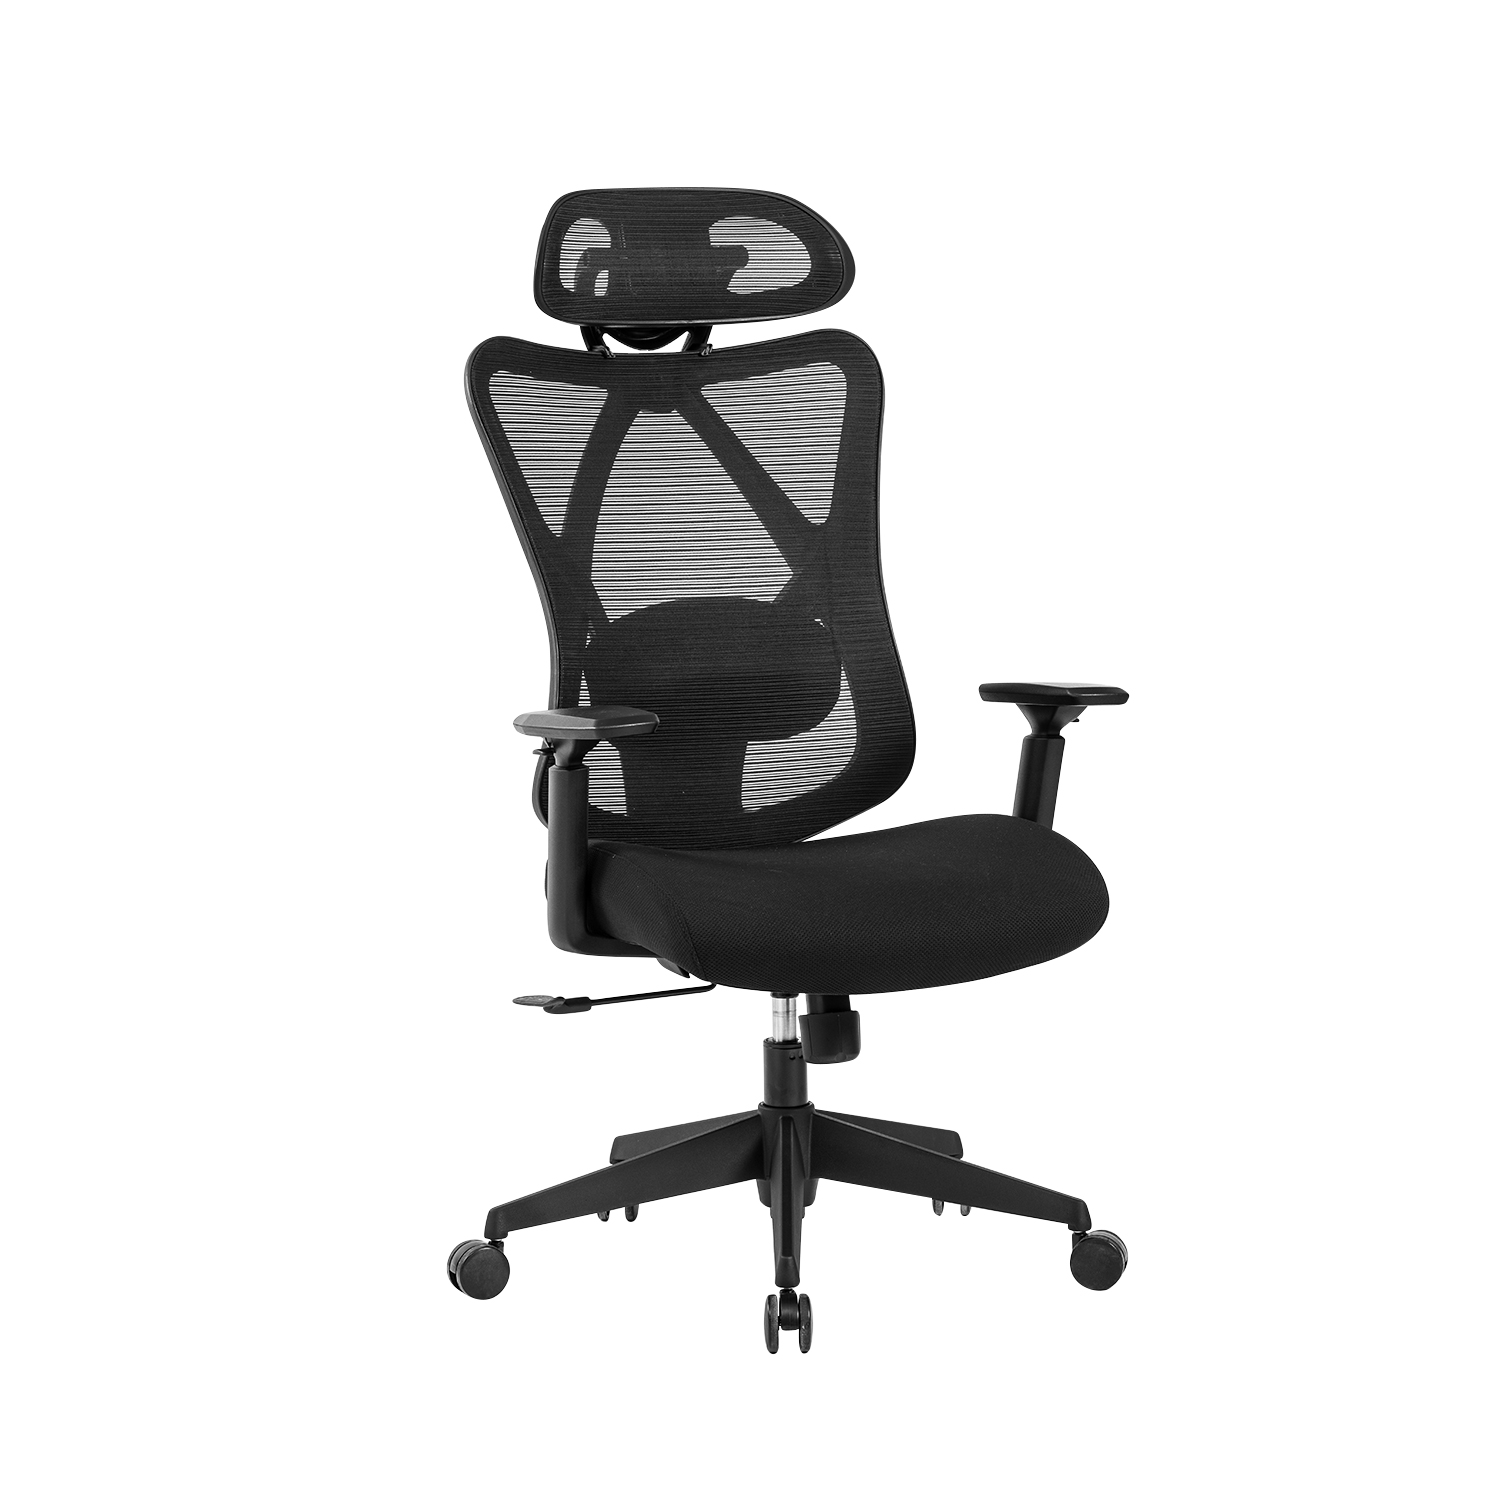 Siège de bureau ergonomique avec support lombaire confortable,fauteuil de  bureau foxsport,chaise de bureau pivotant, réglable en hauteur, mécanisme d'inclinaison,  siège et dossier en toile respirante, noir FS-Chair-KB-8929-Black -  Conforama